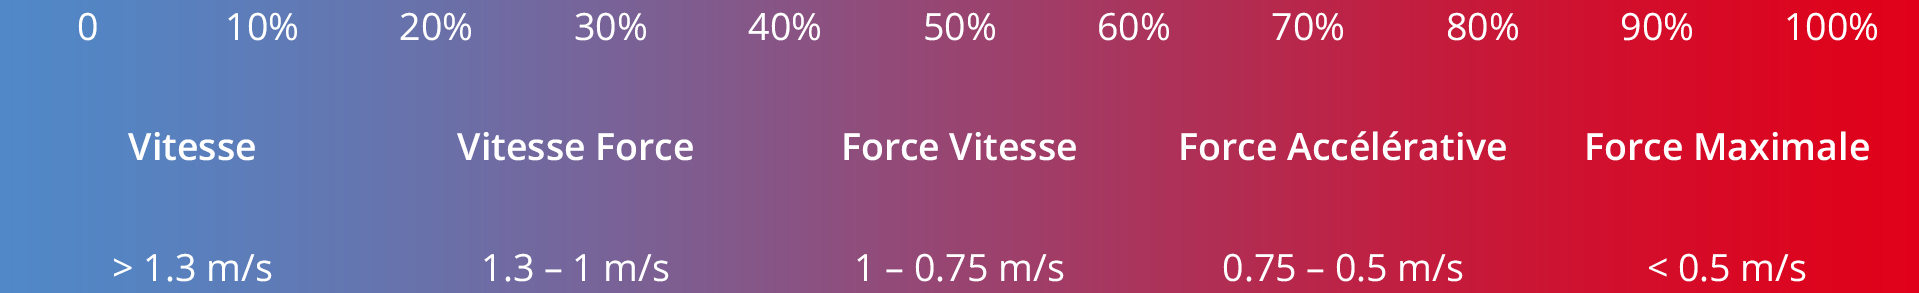 Continuum Force – Vitesse de Bosco.